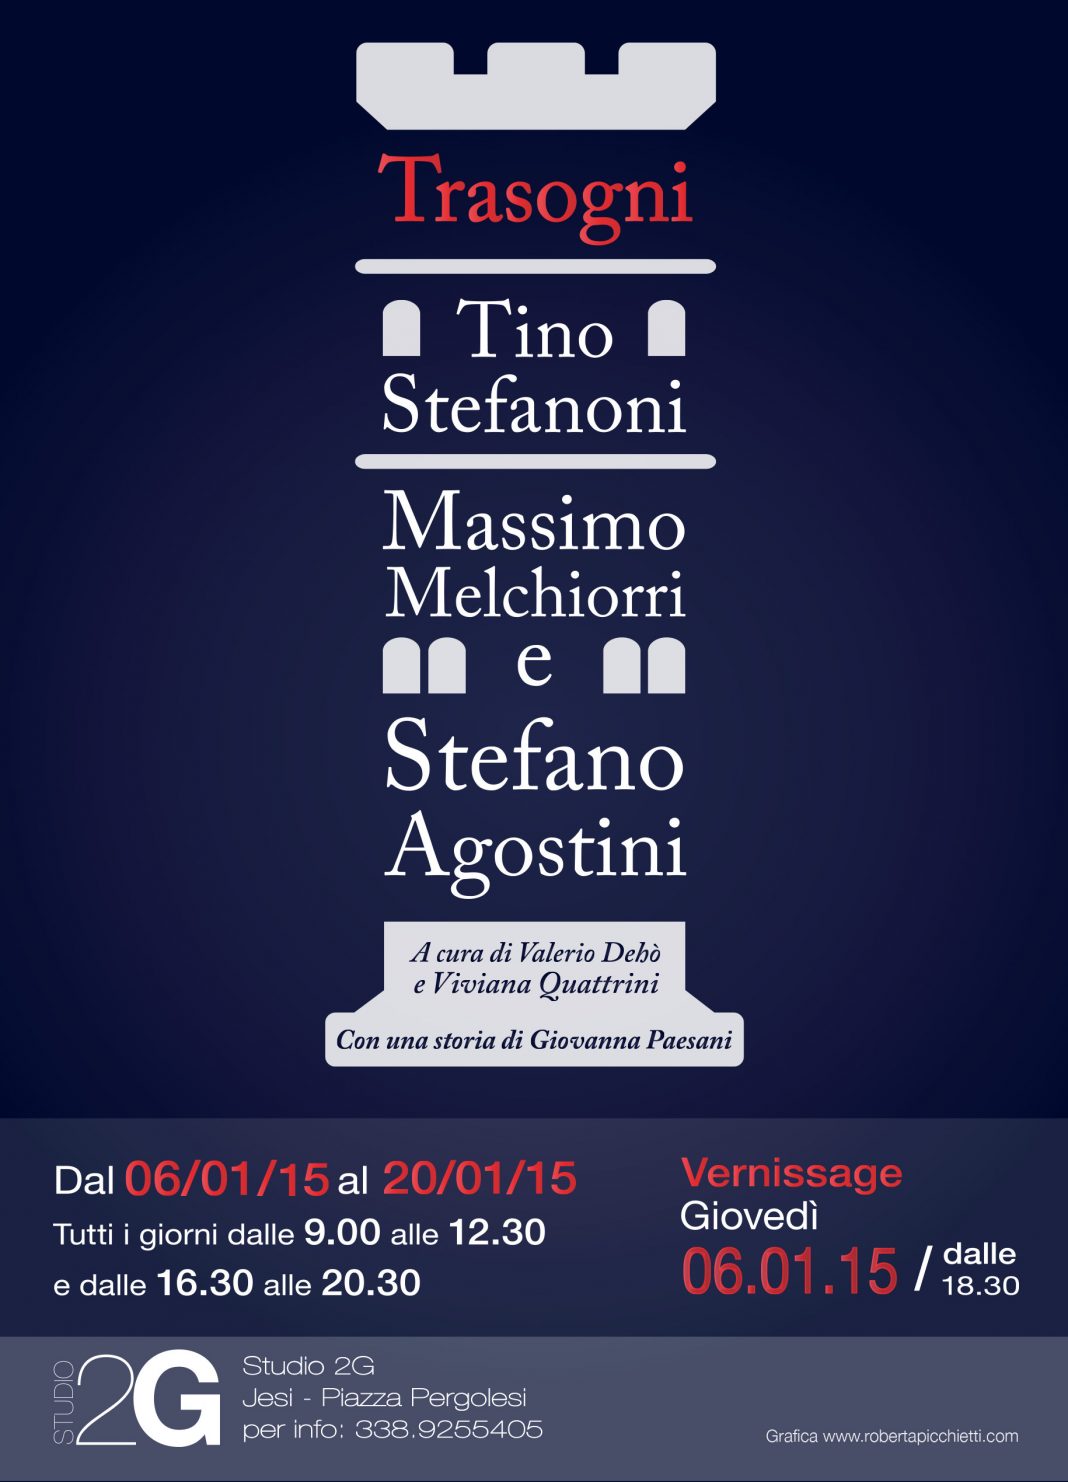 Tino Stefanoni / Massimo Melchiorri / Stefano Agostini – Trasognihttps://www.exibart.com/repository/media/eventi/2014/12/tino-stefanoni-massimo-melchiorri-stefano-agostini-8211-trasogni-1068x1482.jpg